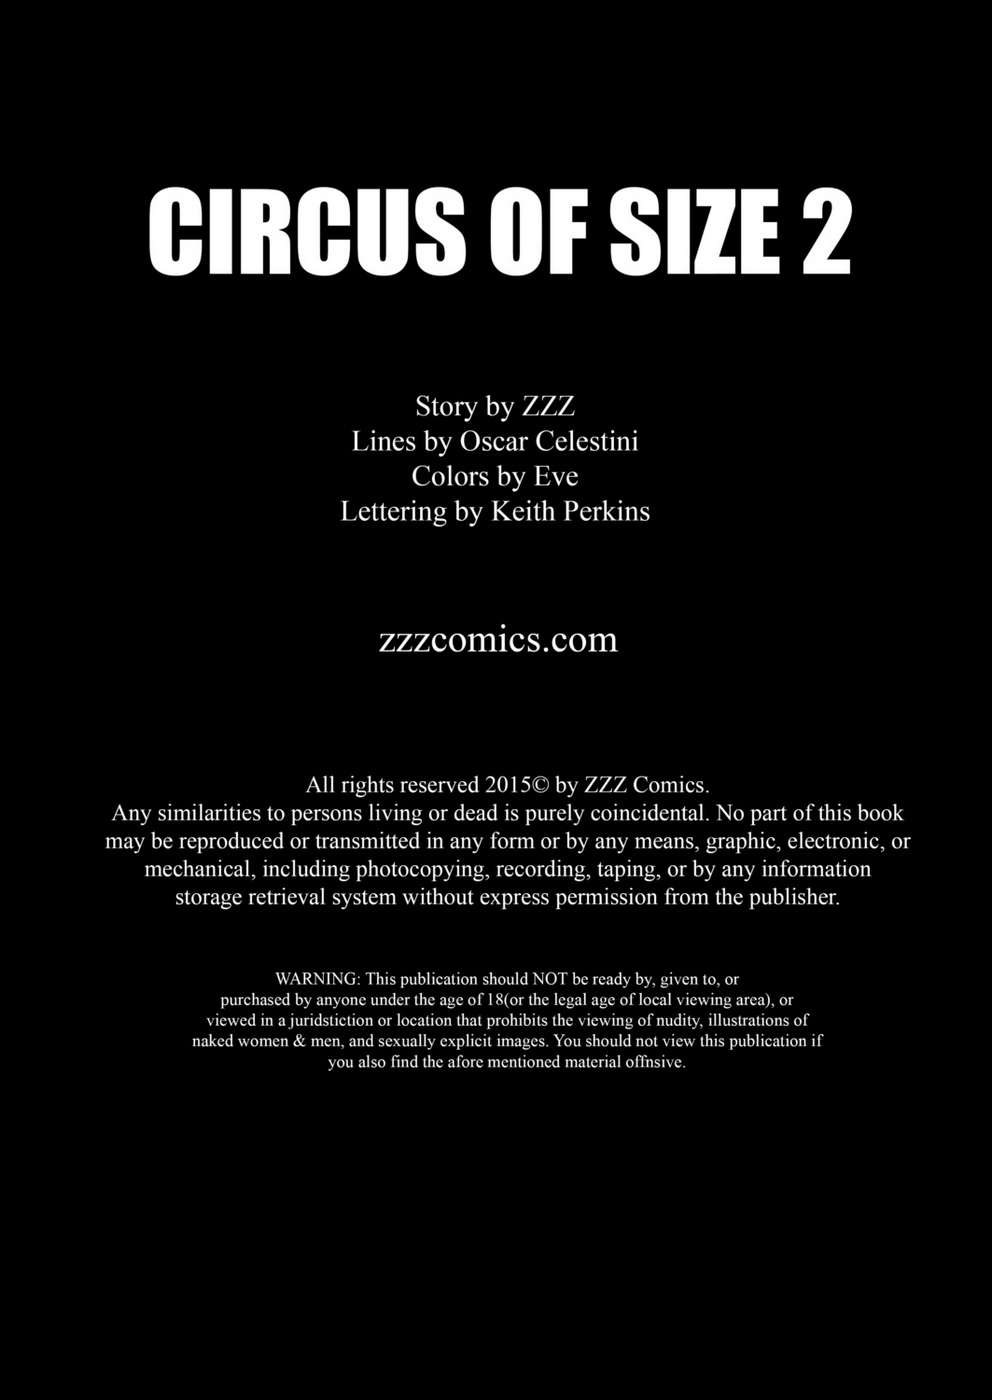 zzz circo di Dimensioni 2